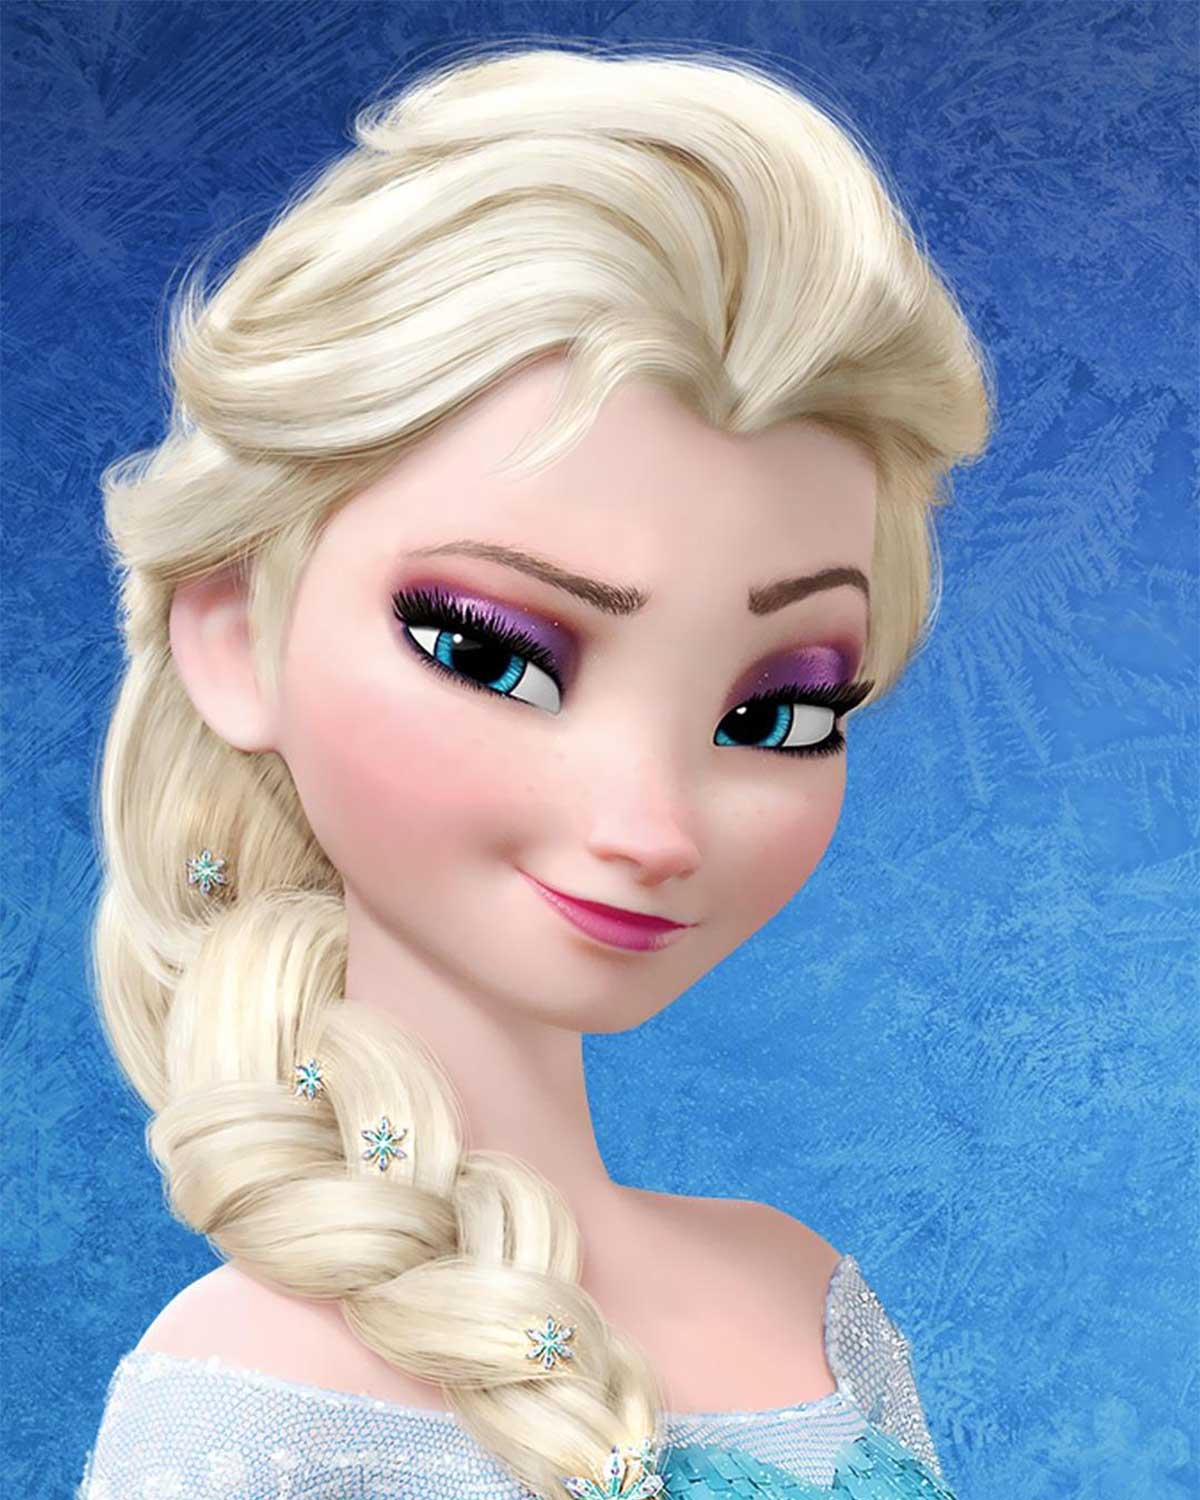 La Reine des neiges 2 : Elsa fera-t-elle son coming-out ?